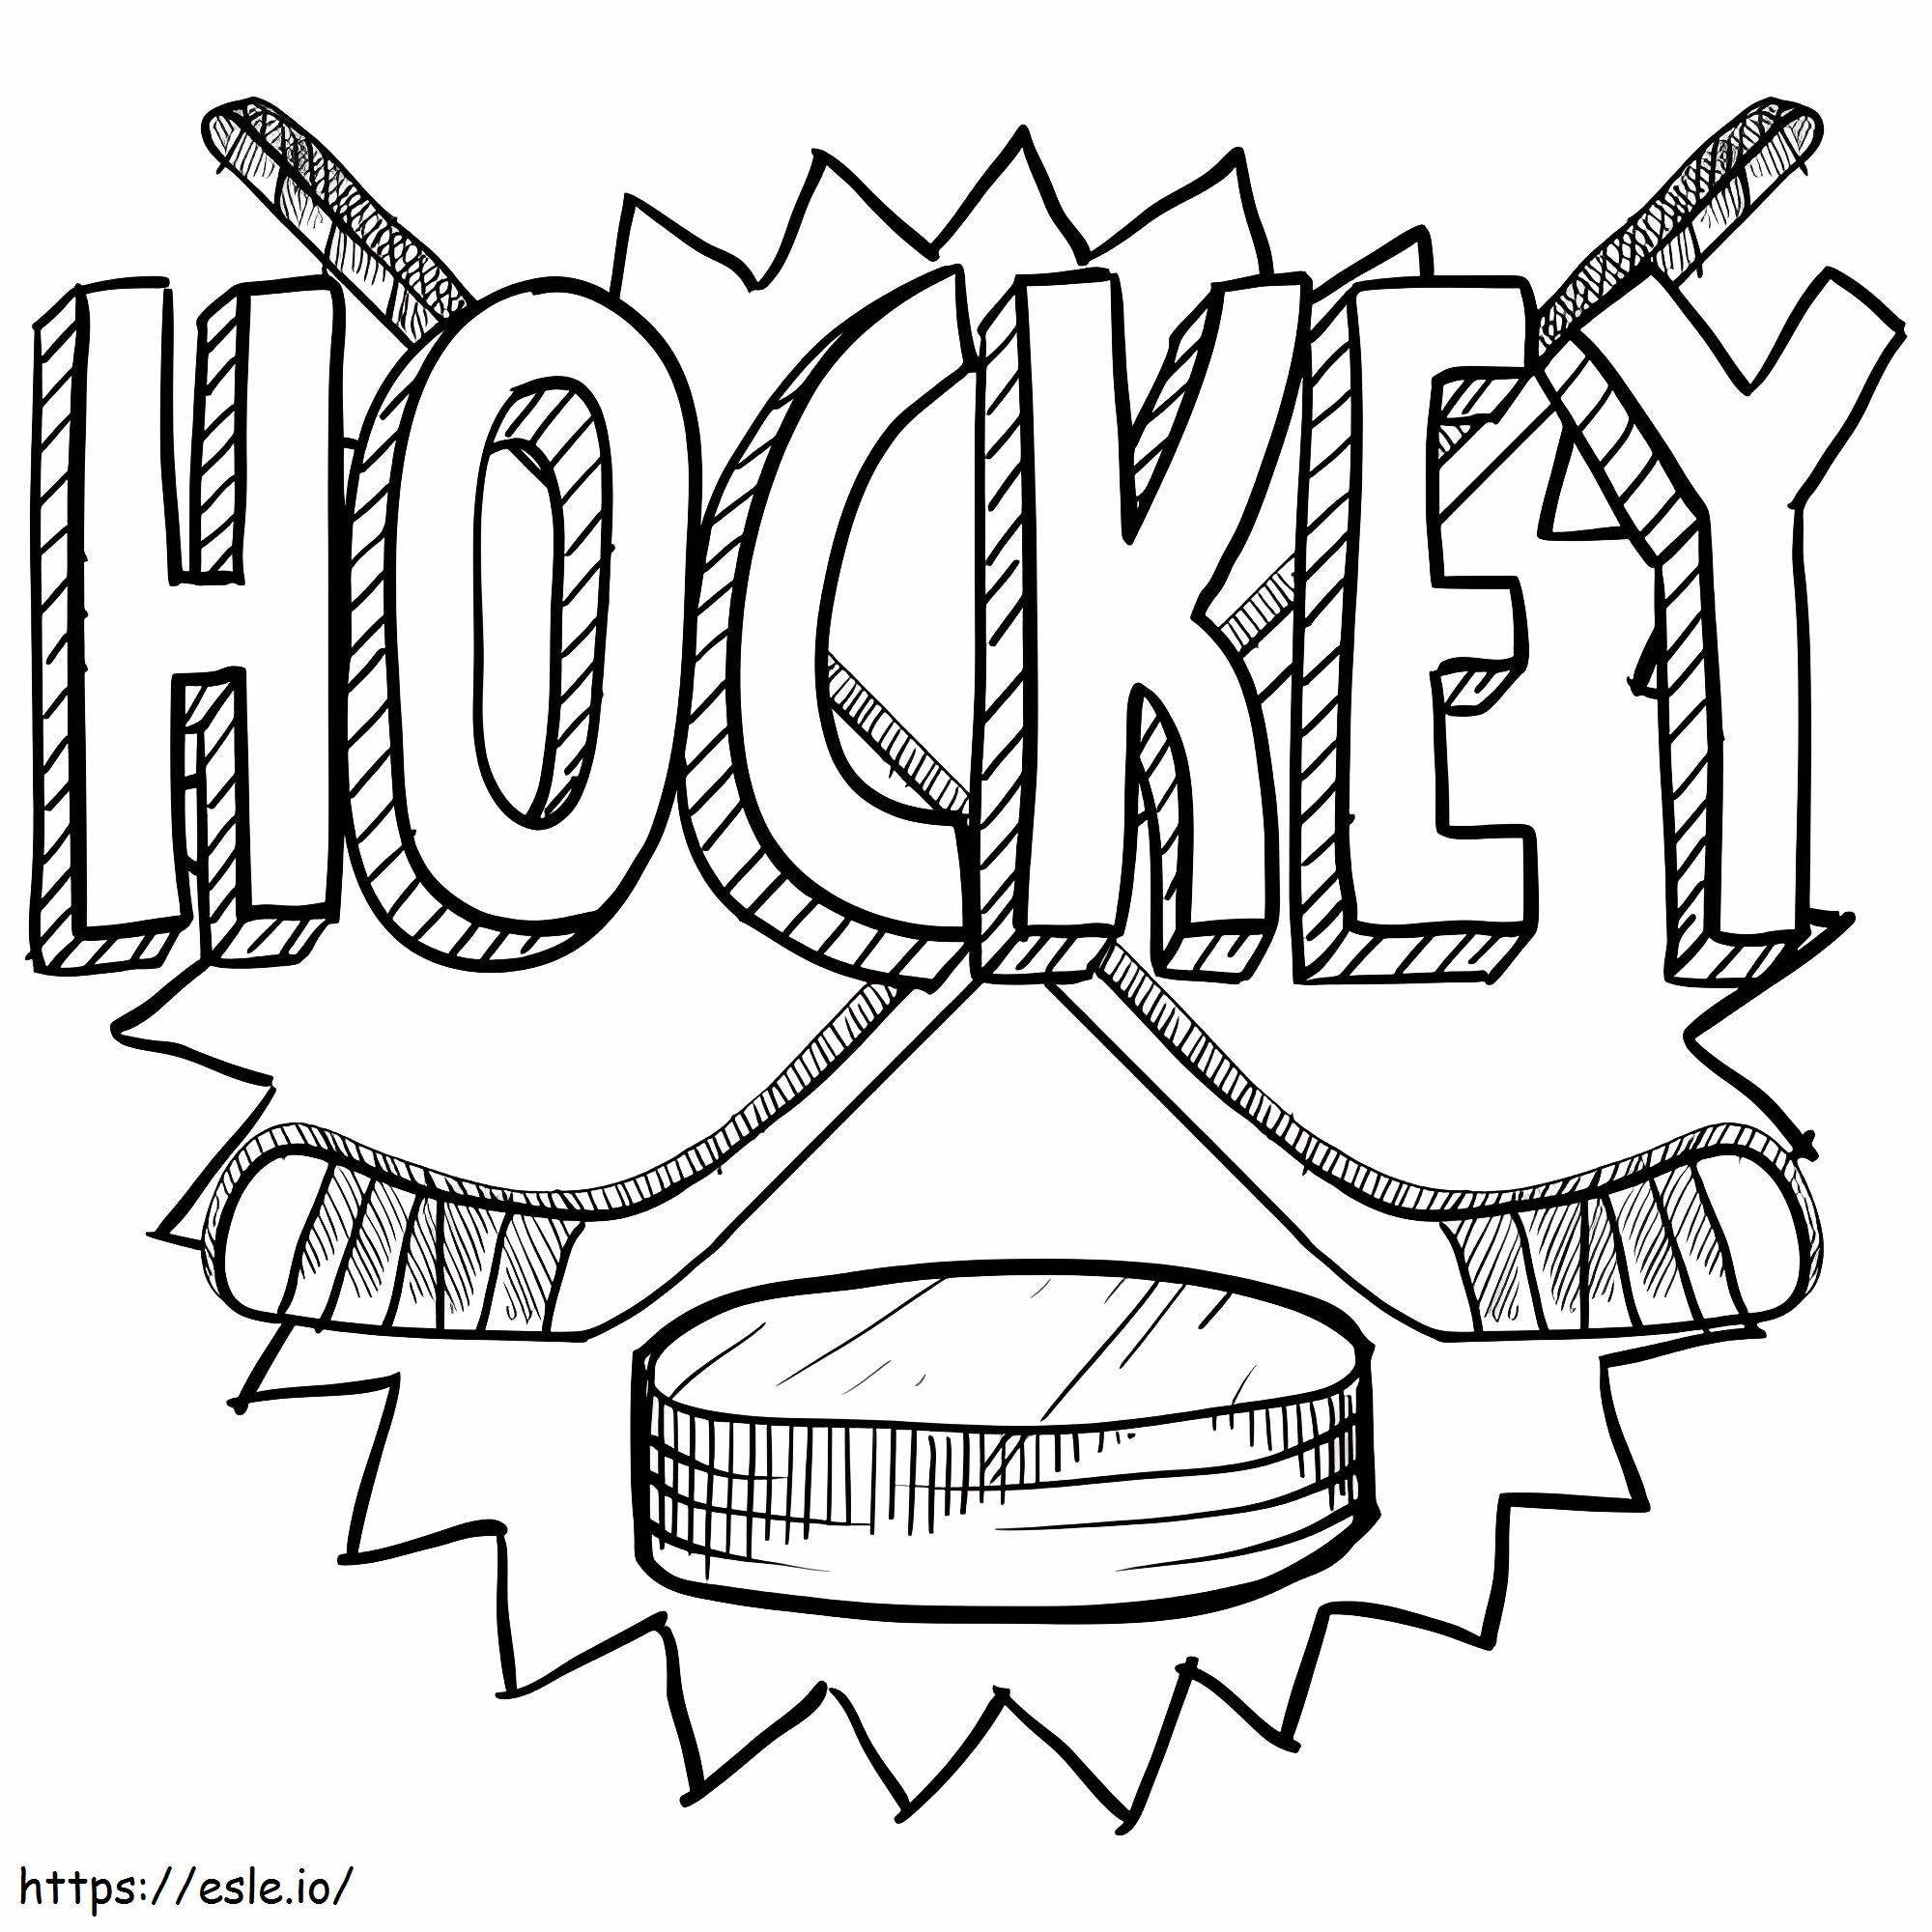 Logotipo De Hockey para colorear